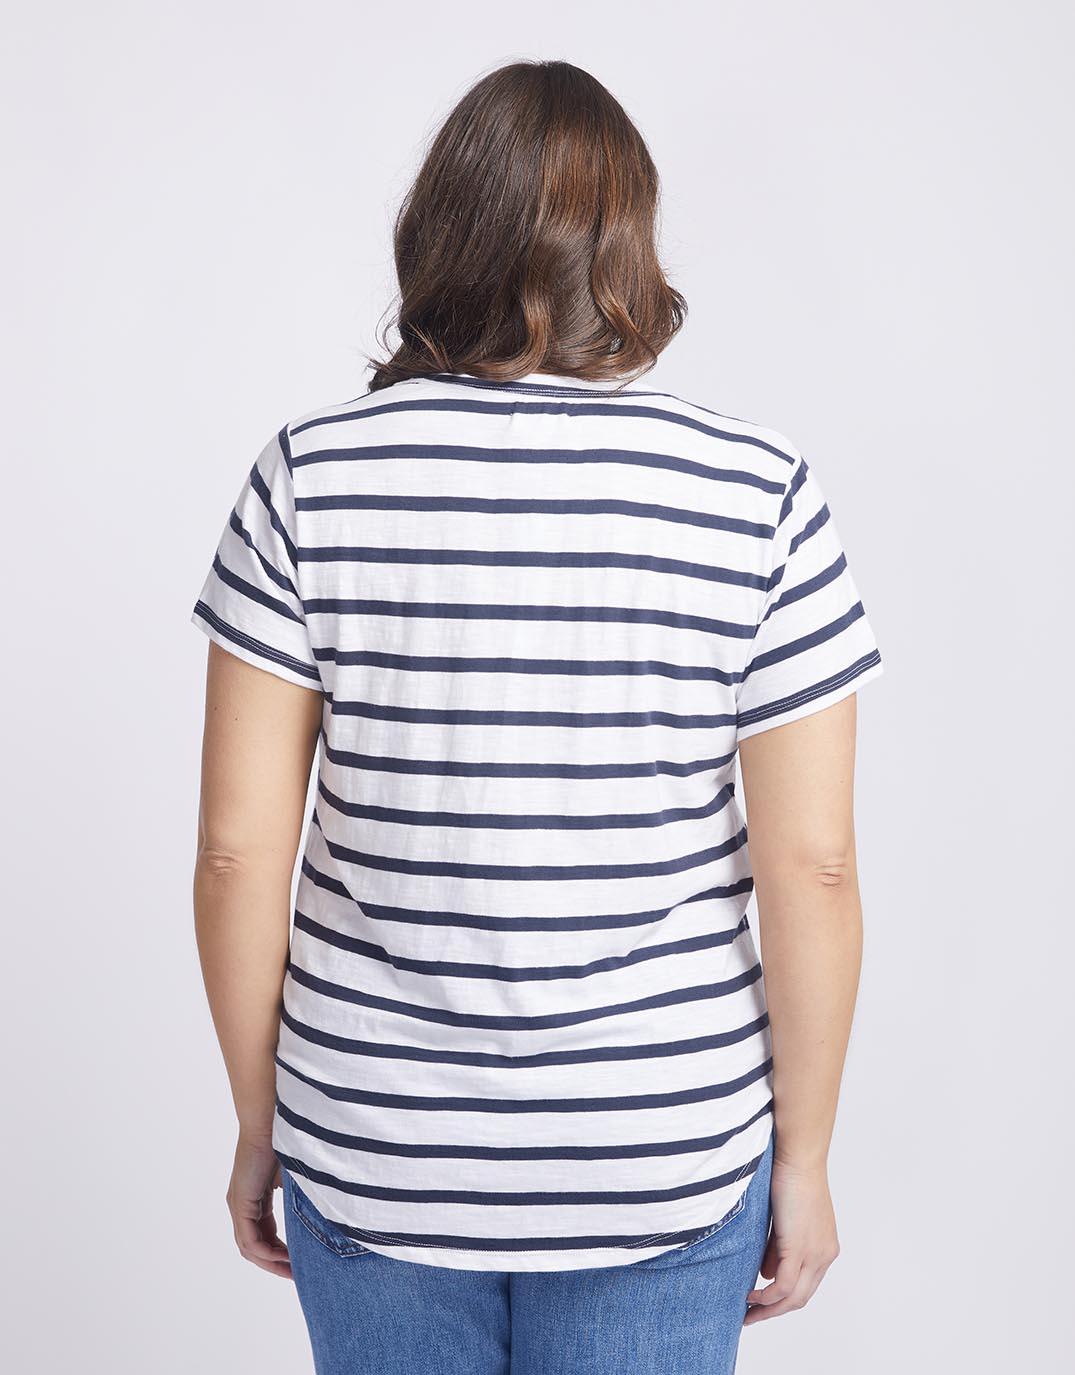 White & Co. - Original Round Neck T-Shirt - Navy/White Stripe - White & Co Living Tees & Tanks